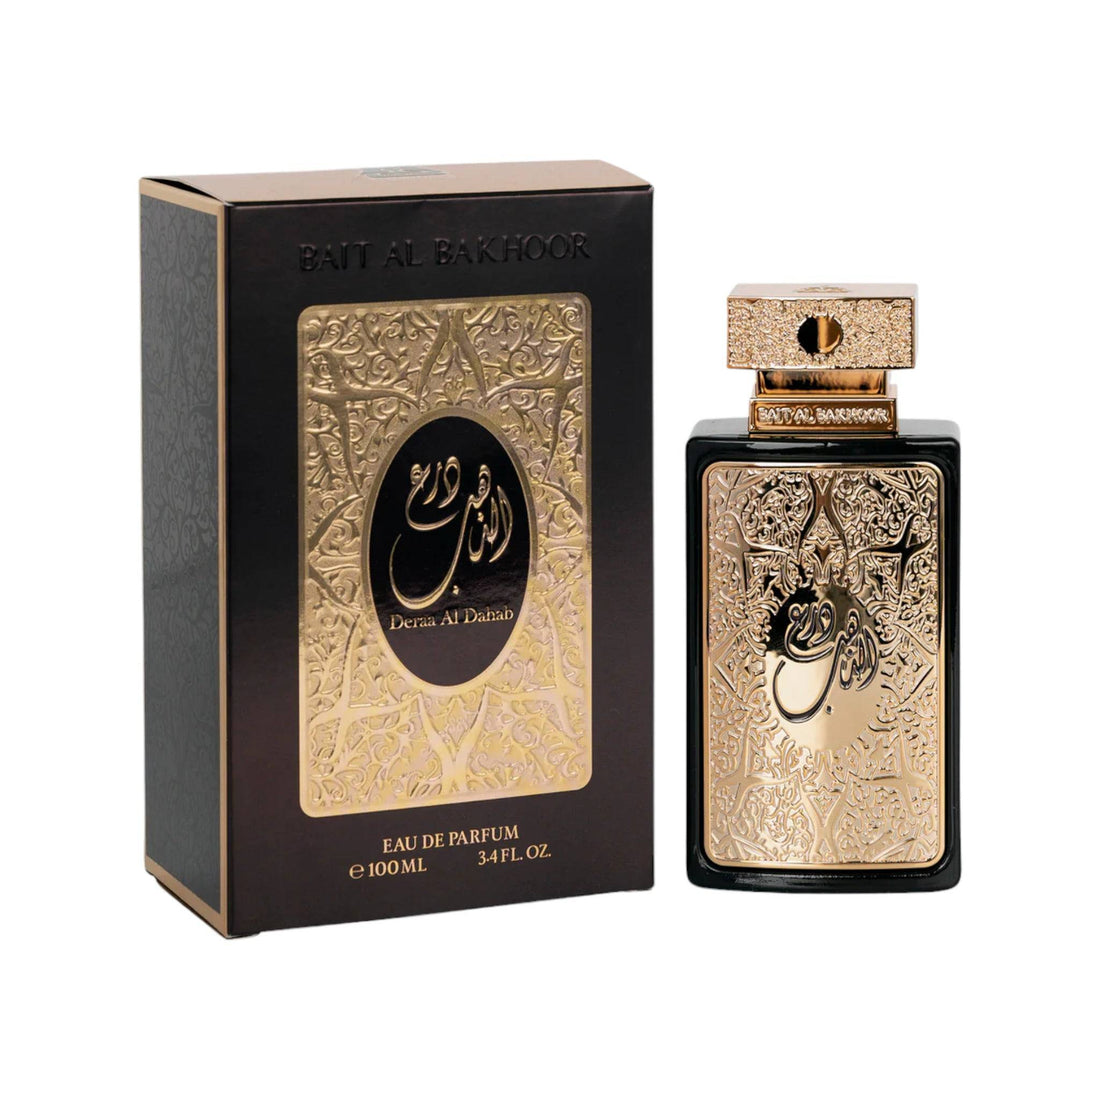 Luxurious 100ml bottle of Bait Al Bakhoor Deraa Al Dahab Eau De Parfum, symbolizing the blend of synthetic and oriental scents for a unisex appeal.